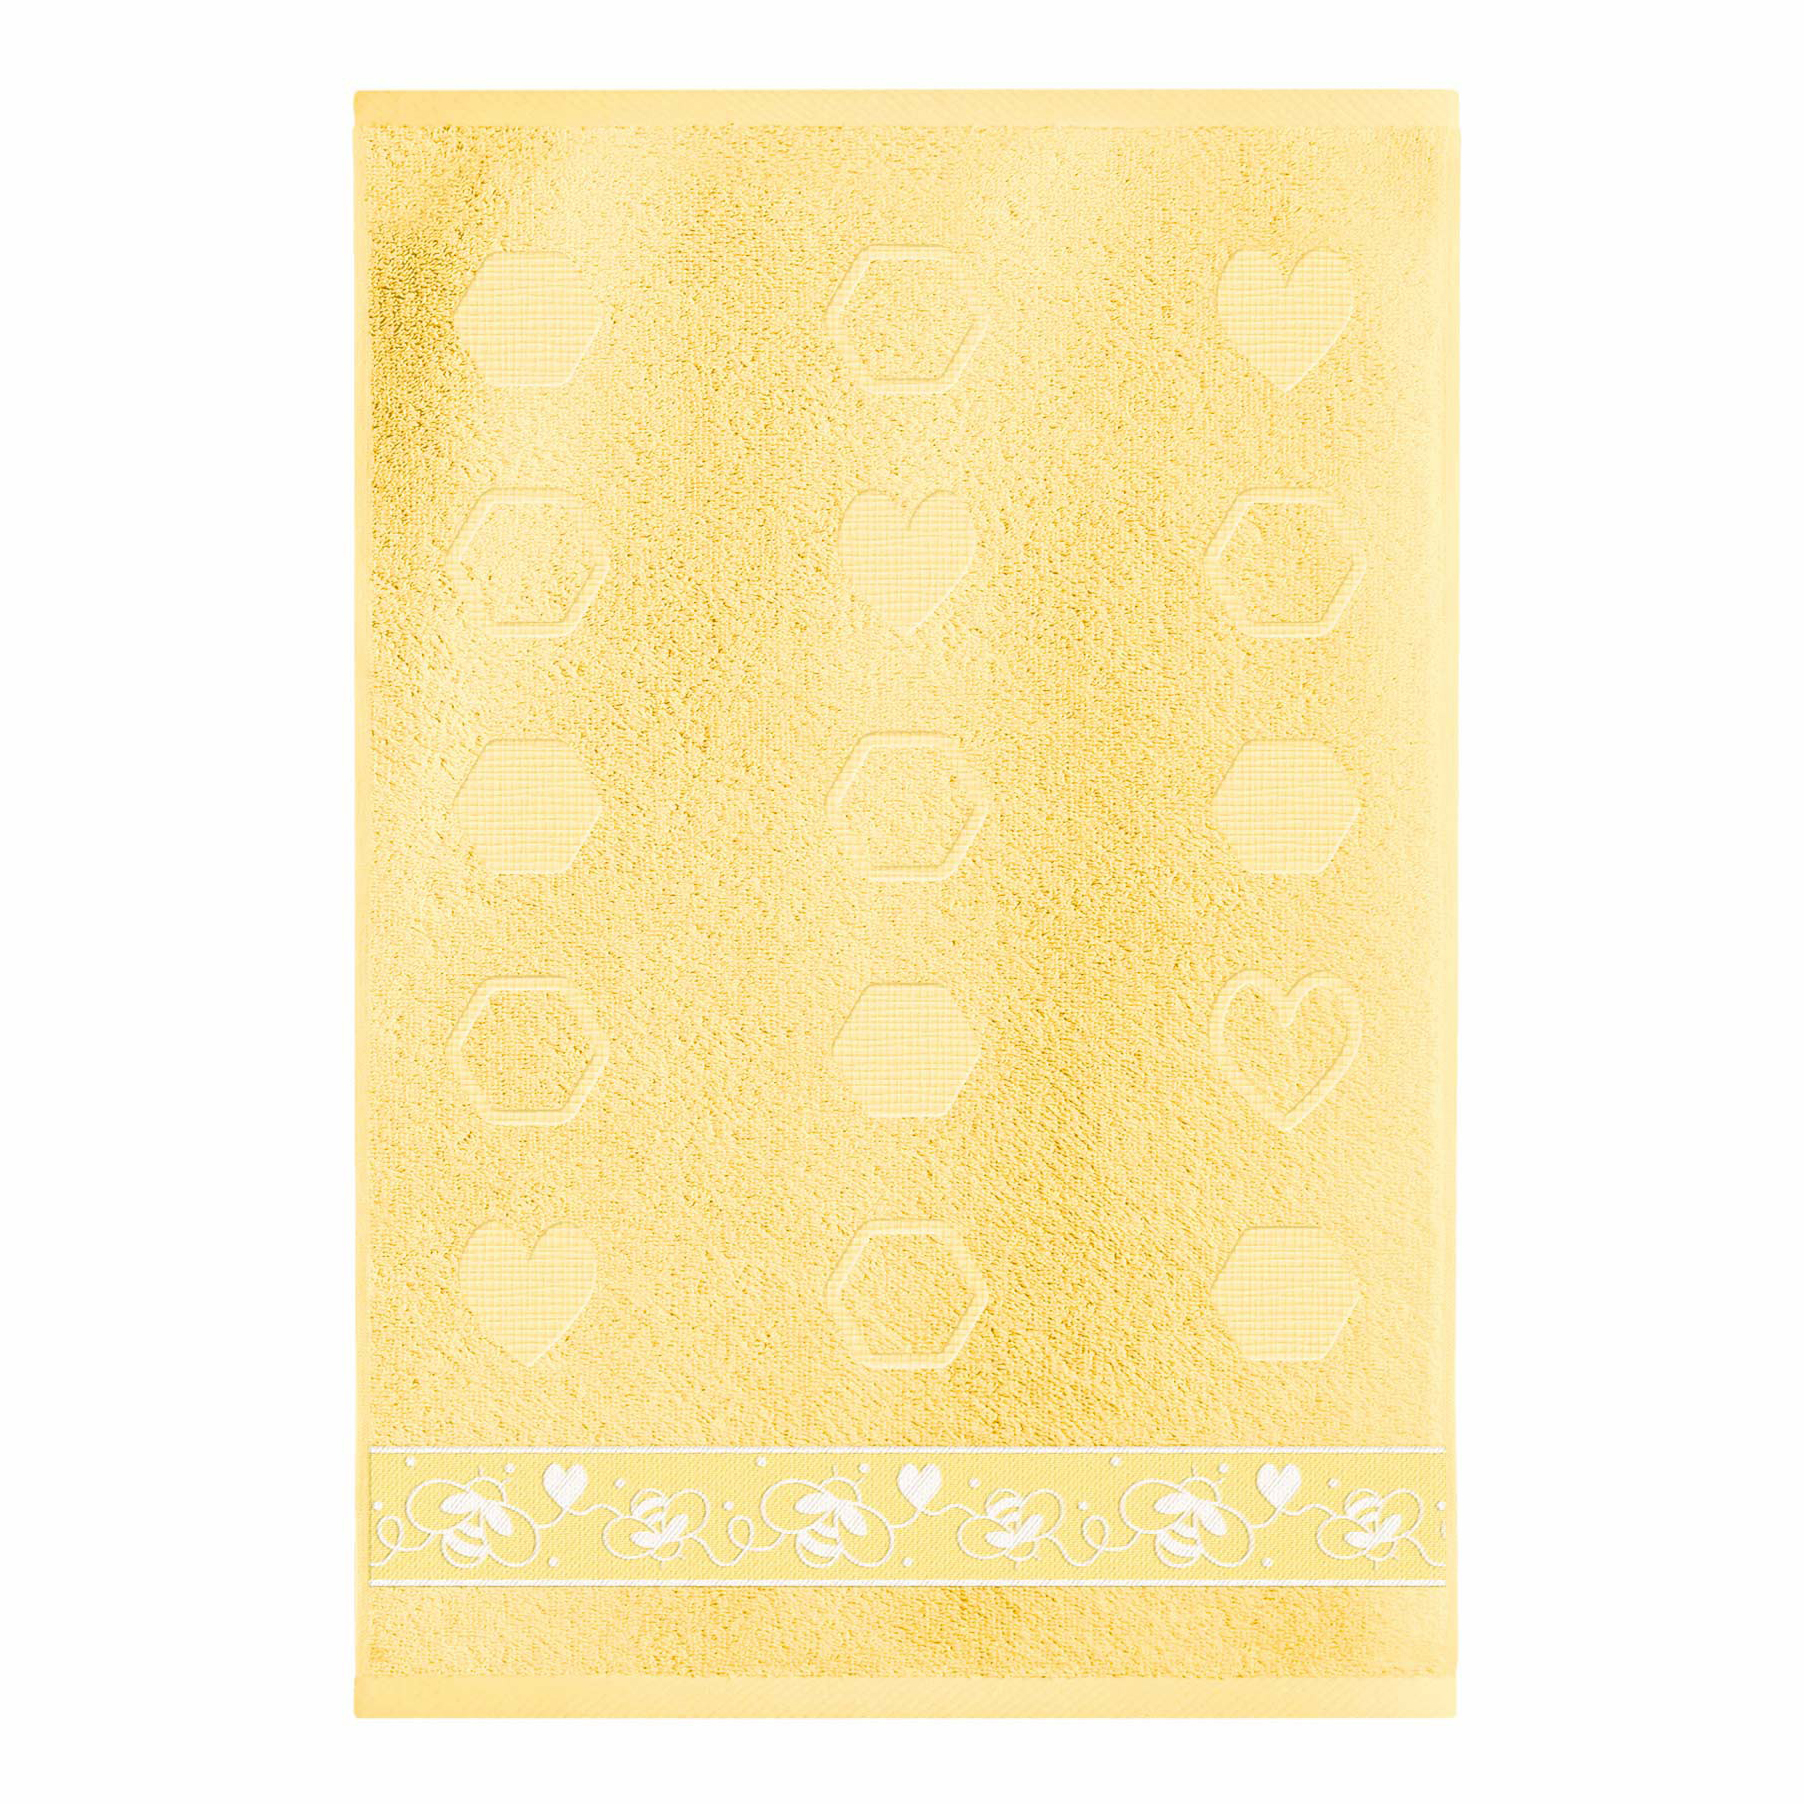 фото Полотенце самойловский текстиль пчелки 30x50 см хлопок желтое